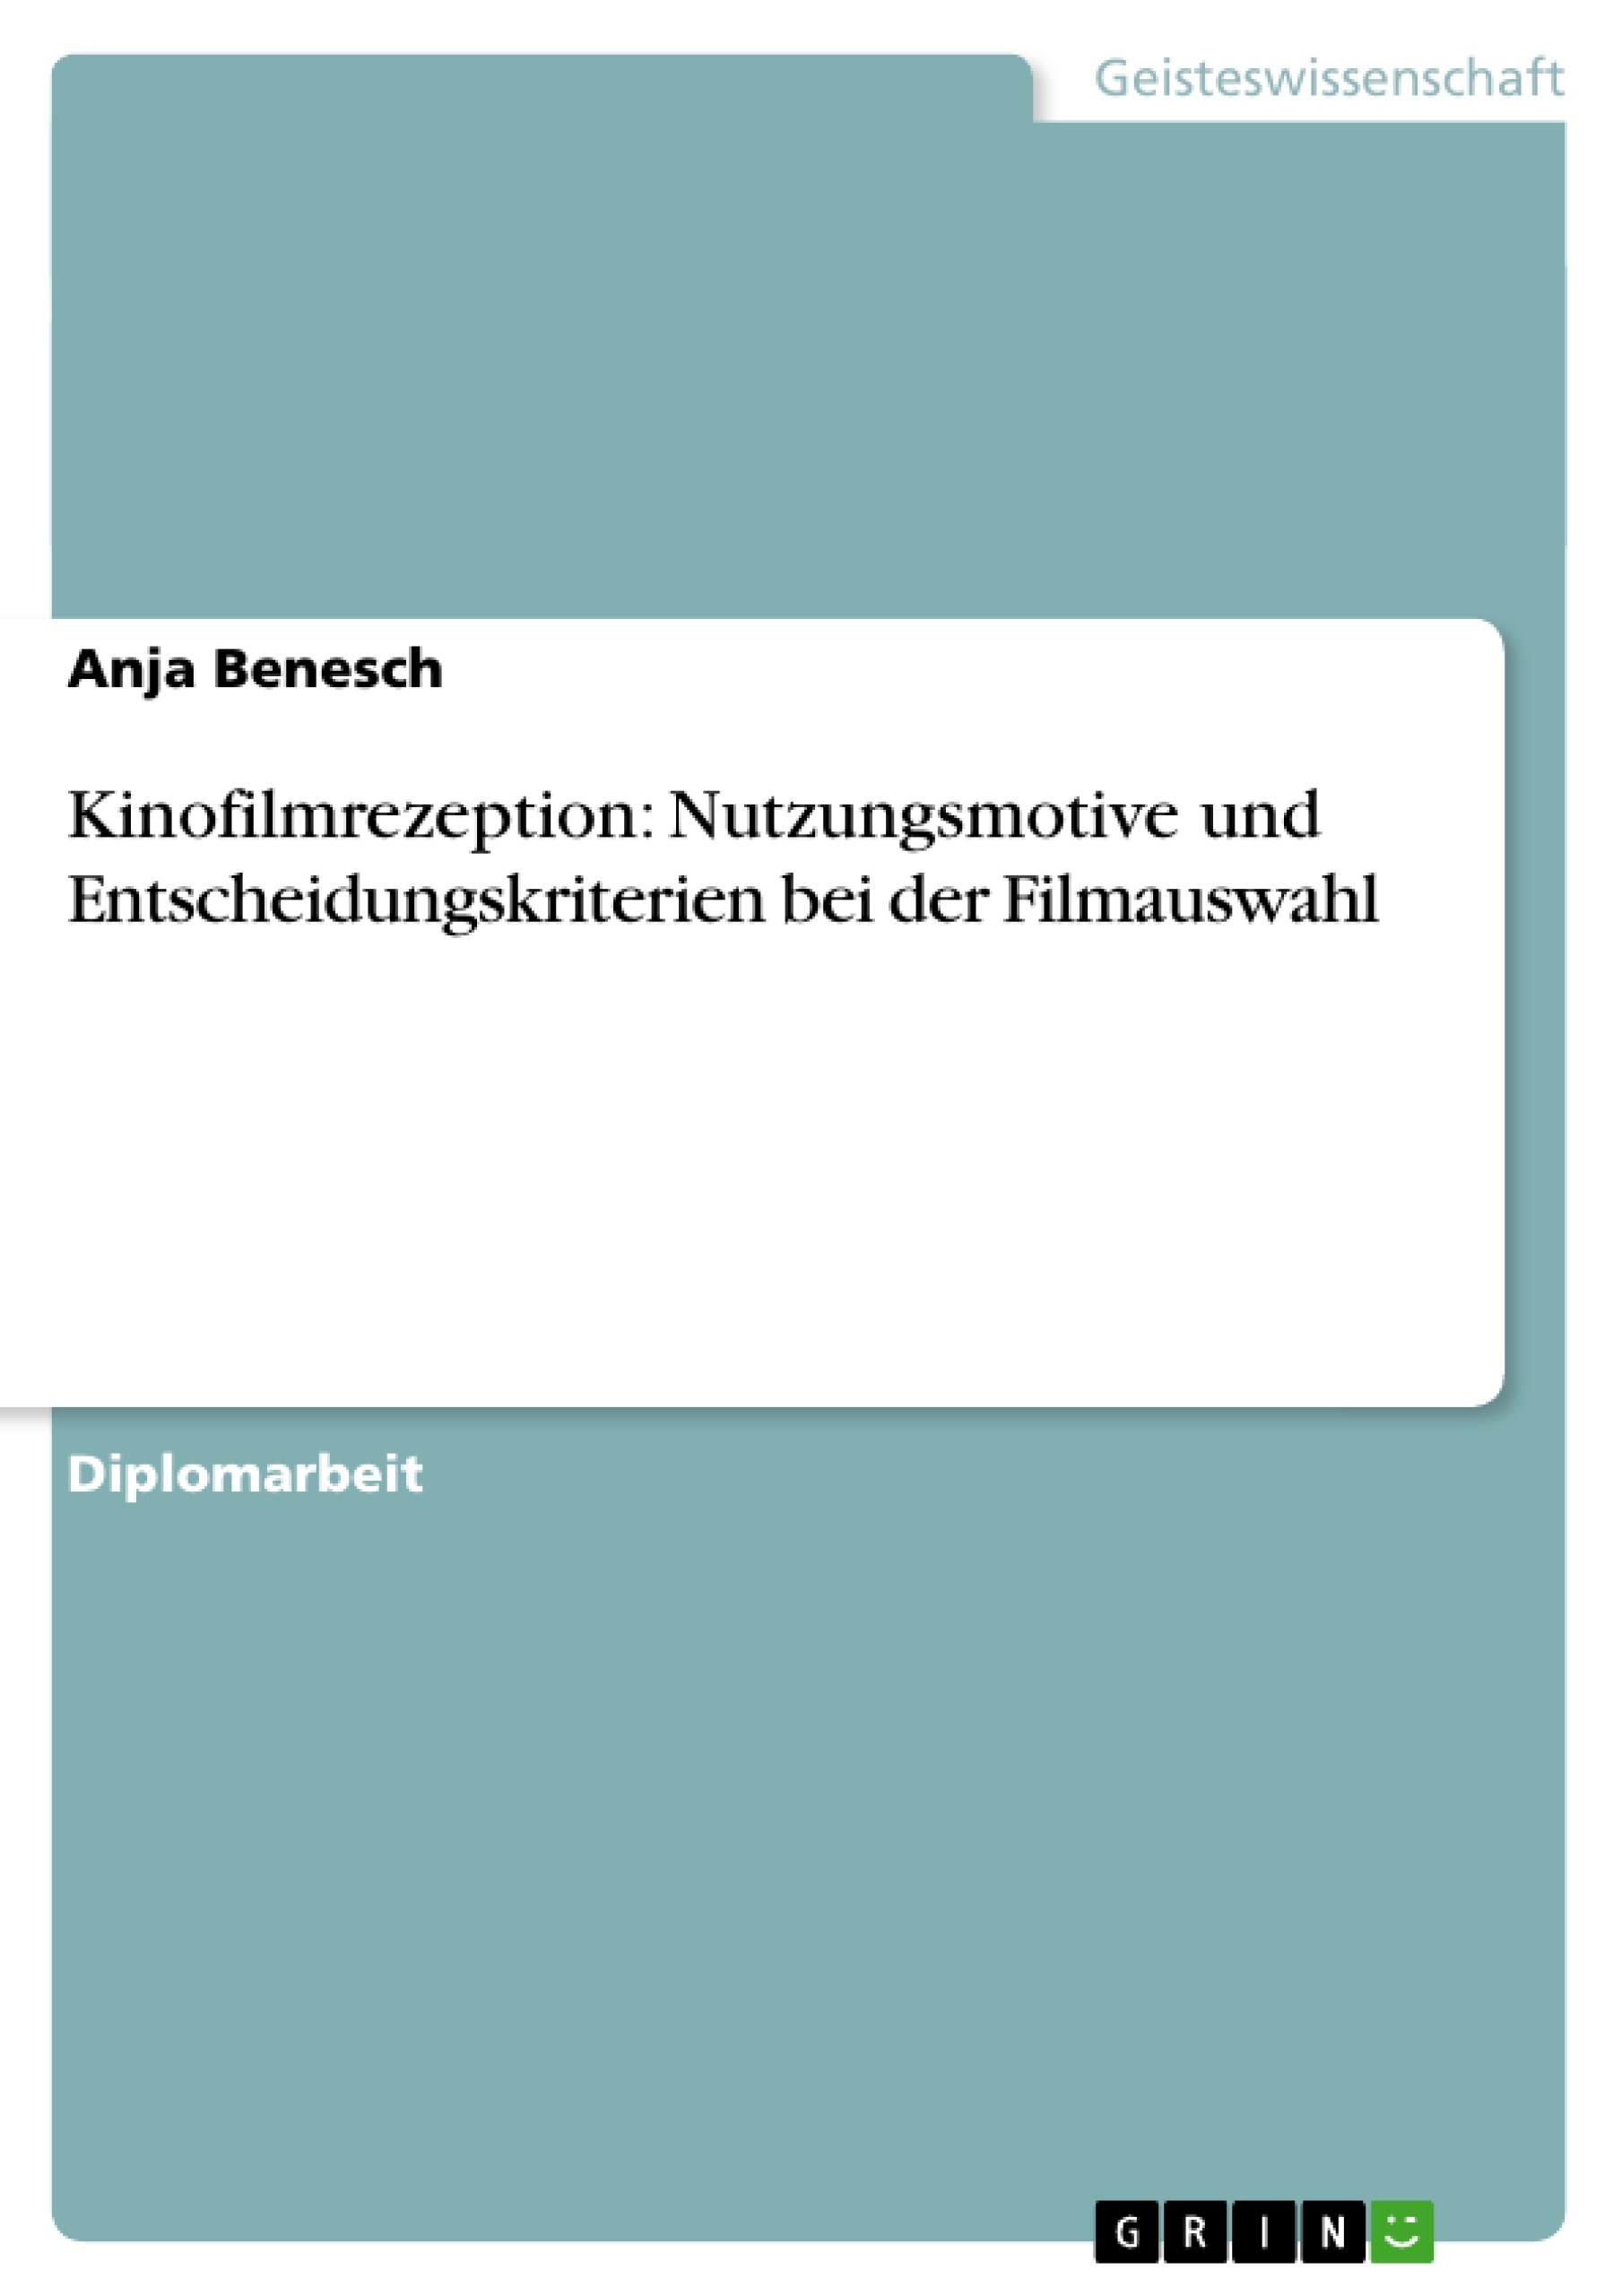 Title: Kinofilmrezeption: Nutzungsmotive und Entscheidungskriterien bei der Filmauswahl